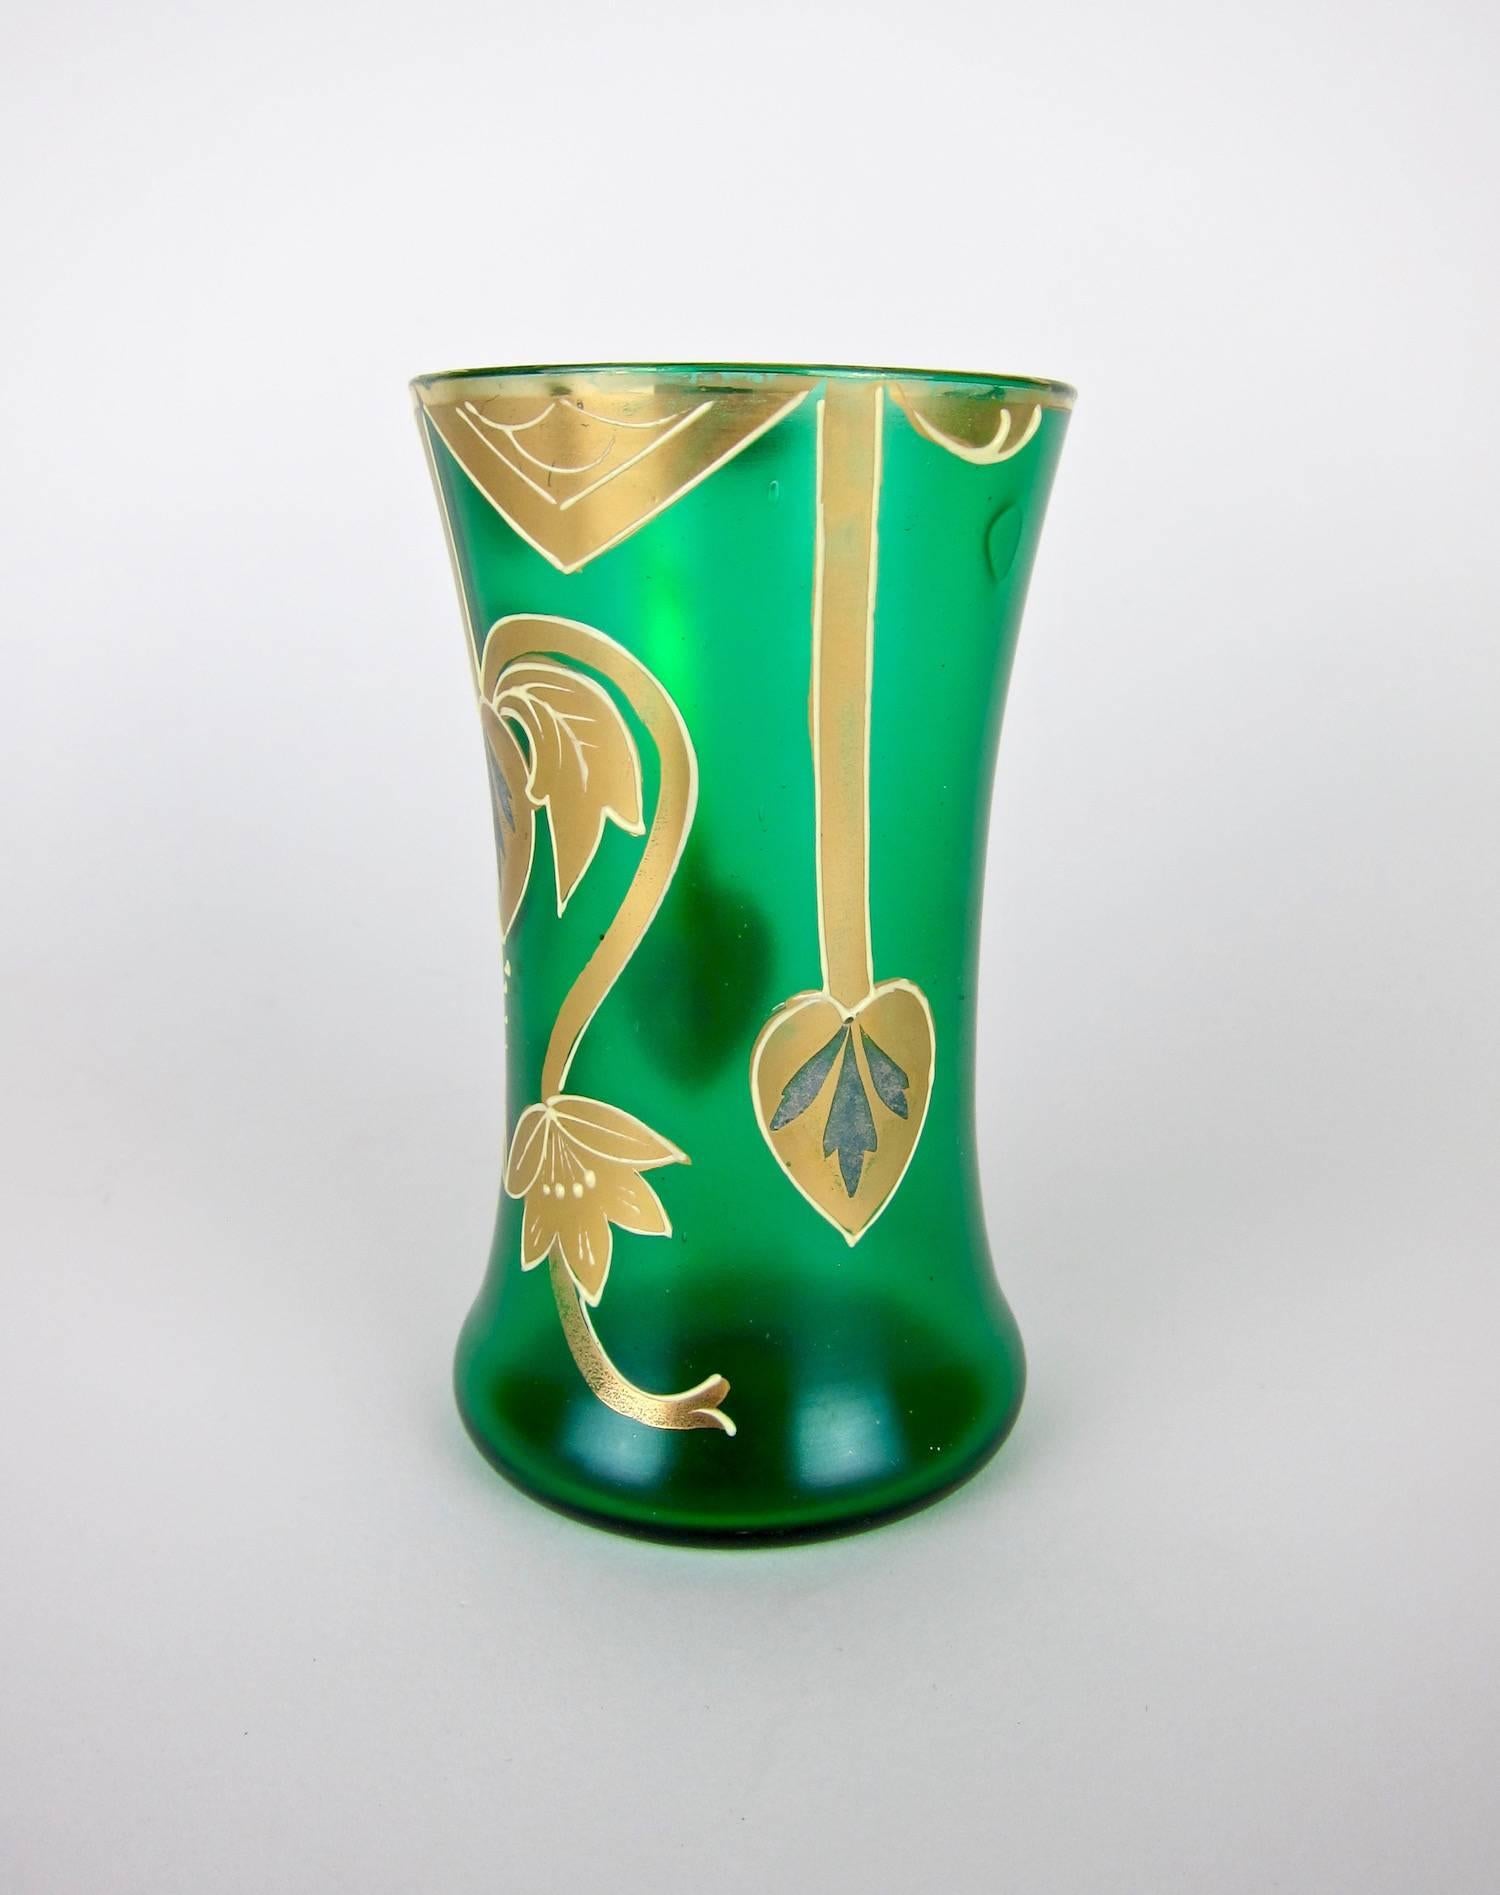 Czech Antique Green Drinking Glasses with Golden Art Nouveau Enamel Decor